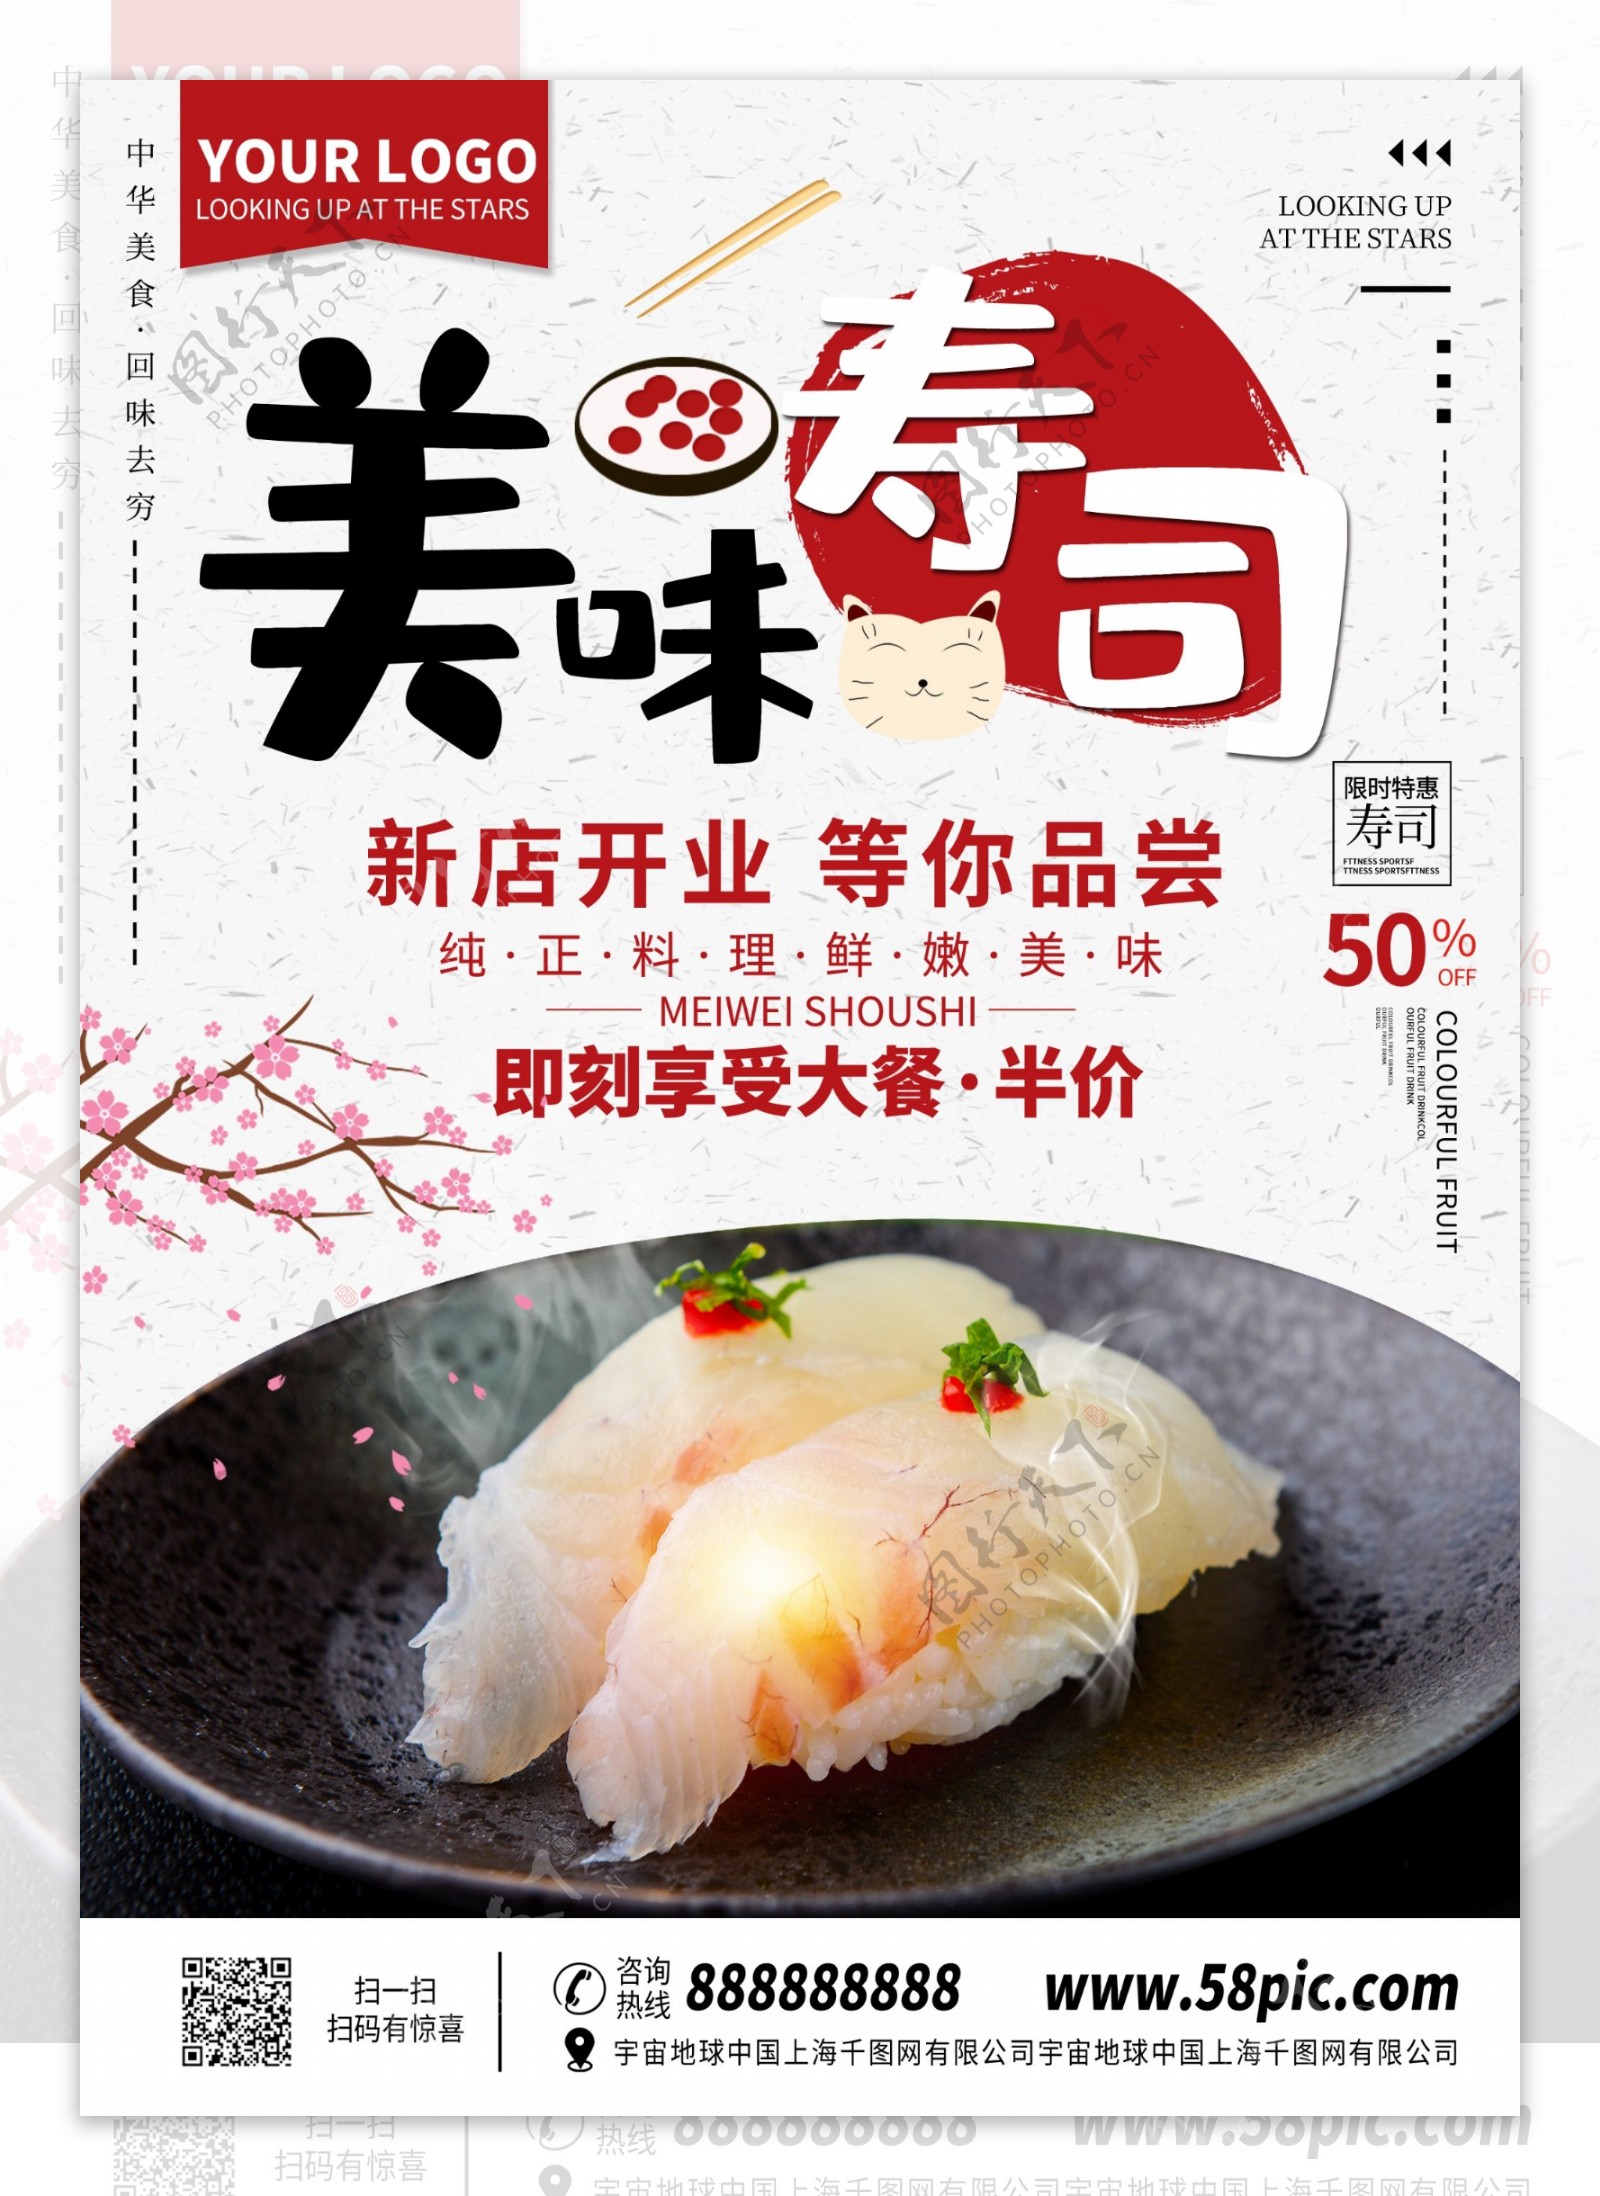 日式料理寿司DM单页菜单